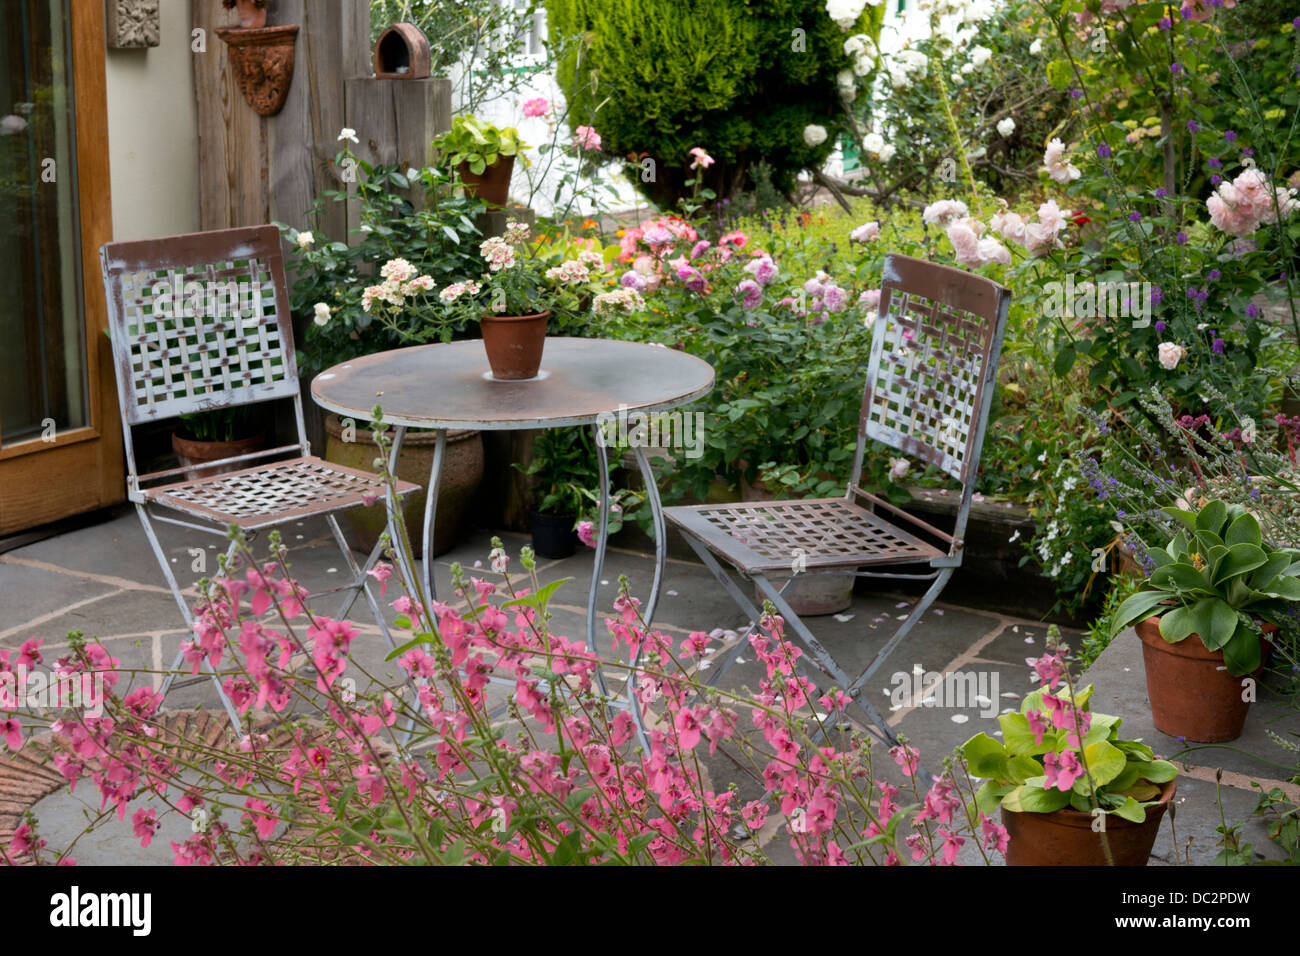 Englisch Sommer steinernen Terrasse mit Metall Gartenmöbel eingefasst von  rosa Rosen und Diasica Blumen, England Stockfotografie - Alamy